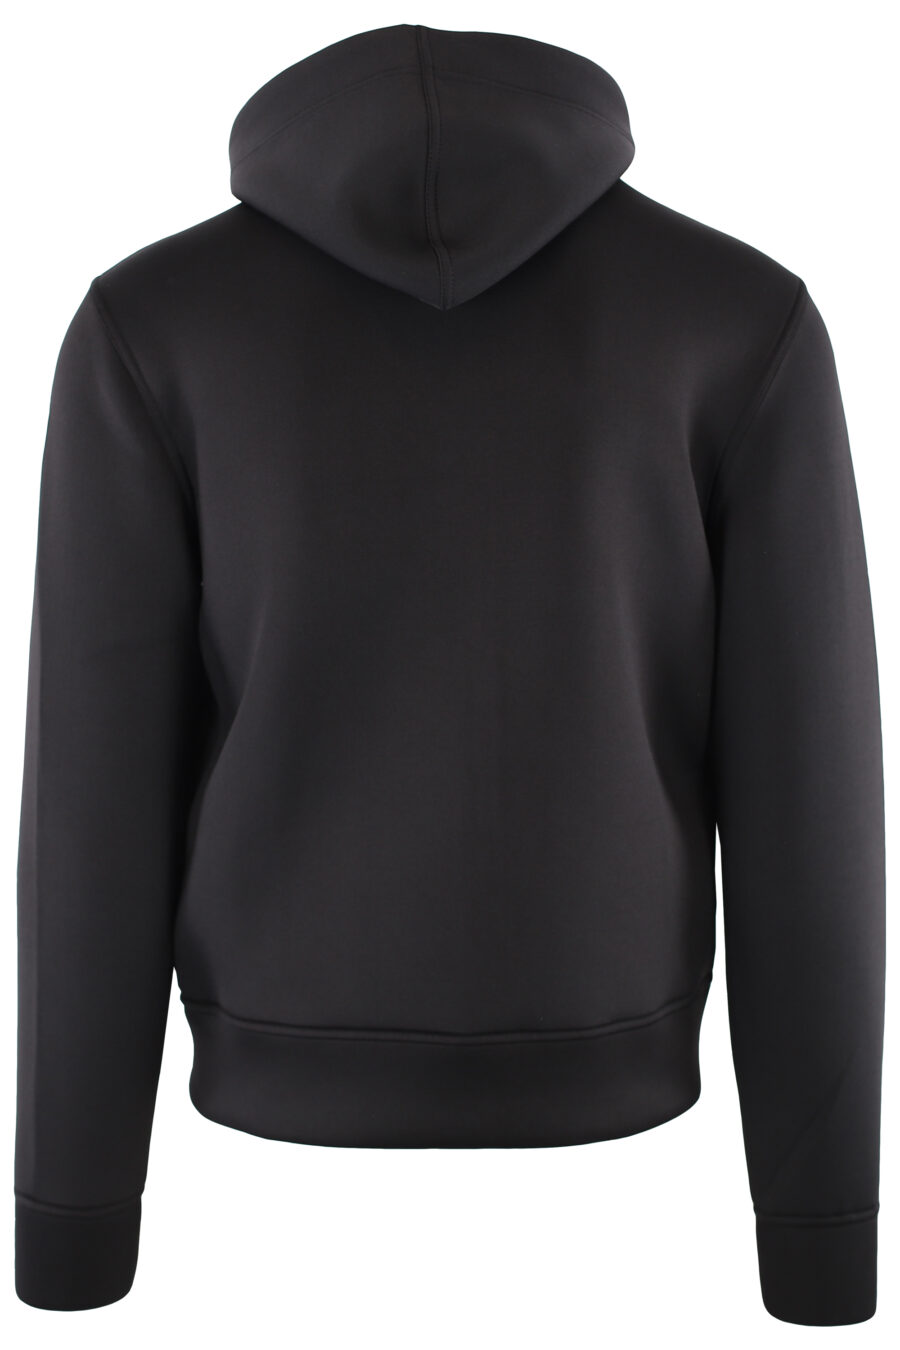 Black sweatshirt with hood and zip - IMG 7354